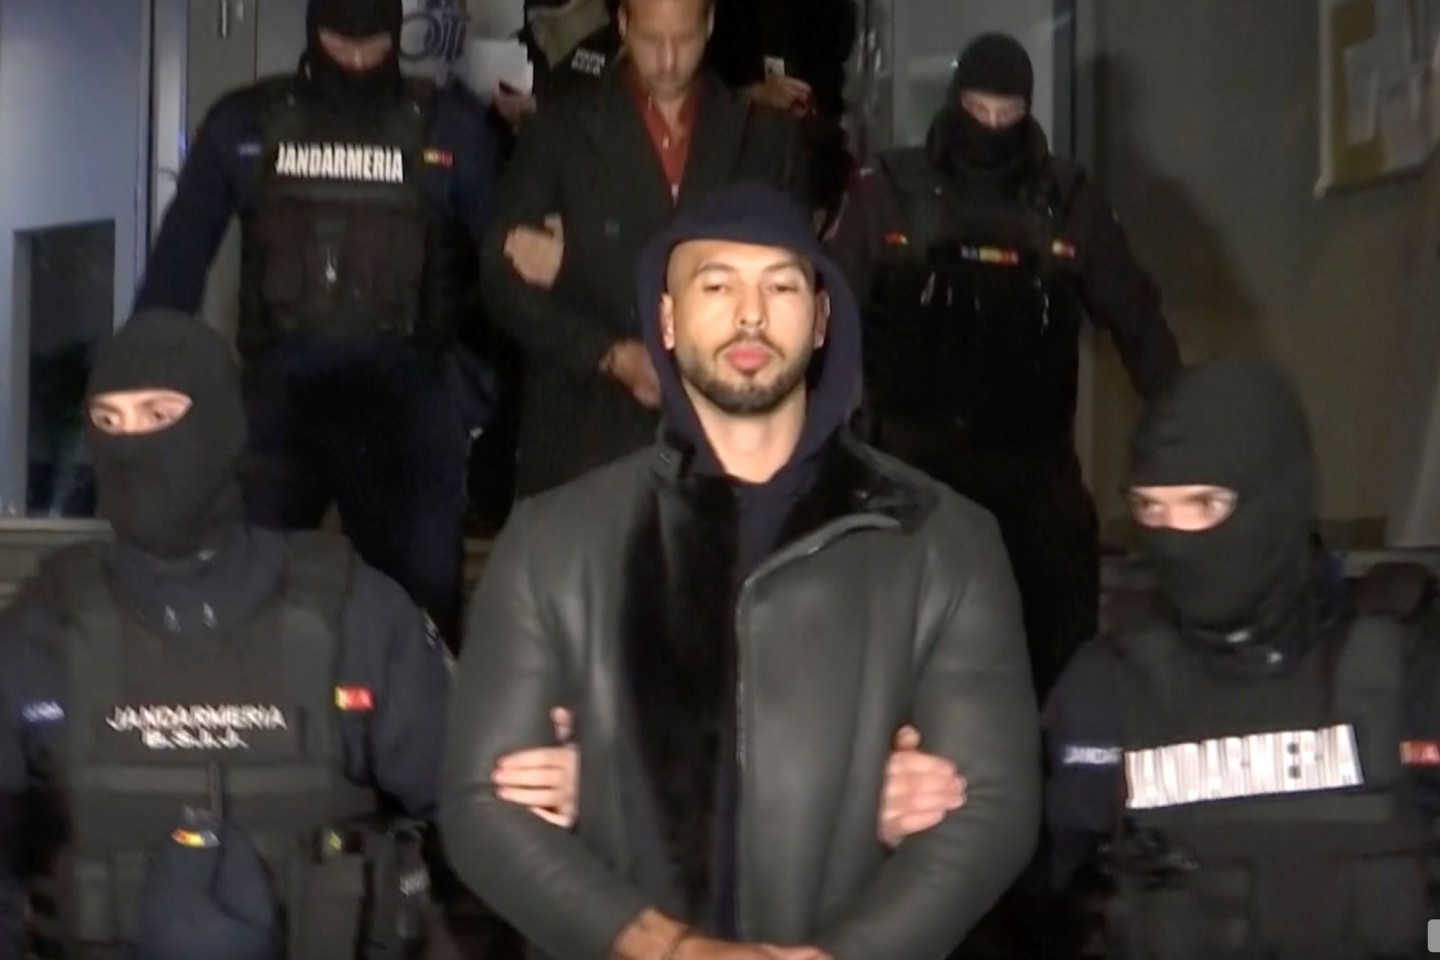 Andrew Tate (m.) bei seiner Festnahme durch die rumänische Polizei Ende Dezember vergangenen Jahres.